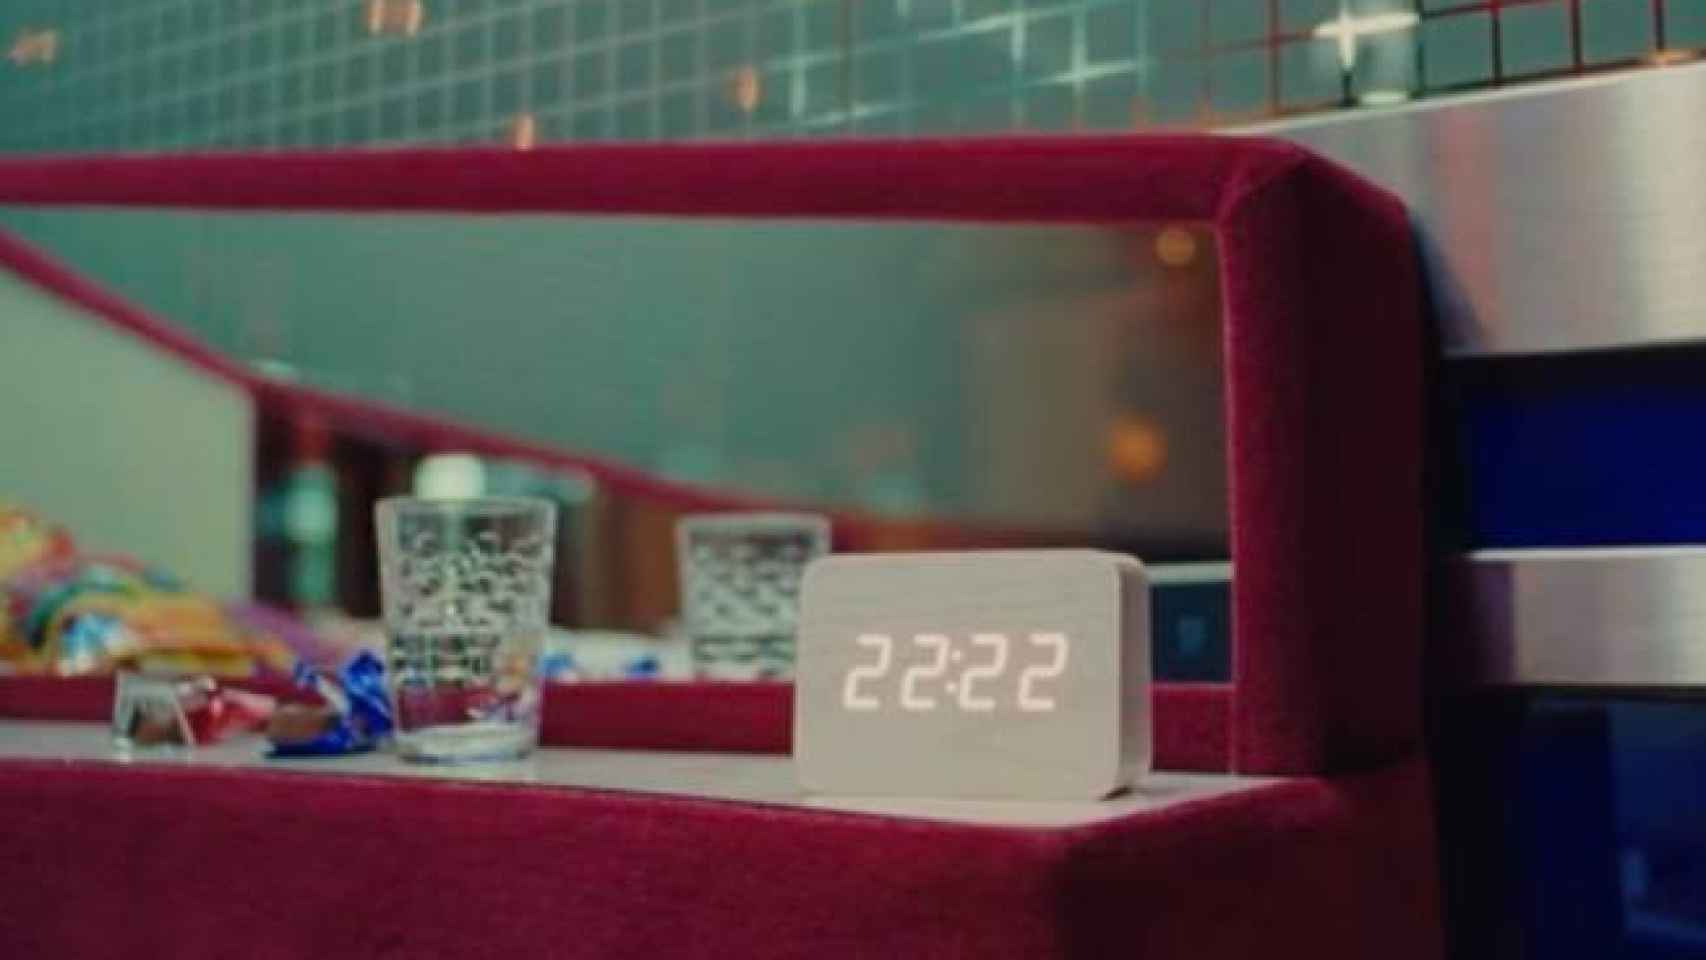 El misterioso reloj digital que aparece en el videoclip de 'Tuya' de Rosalía.